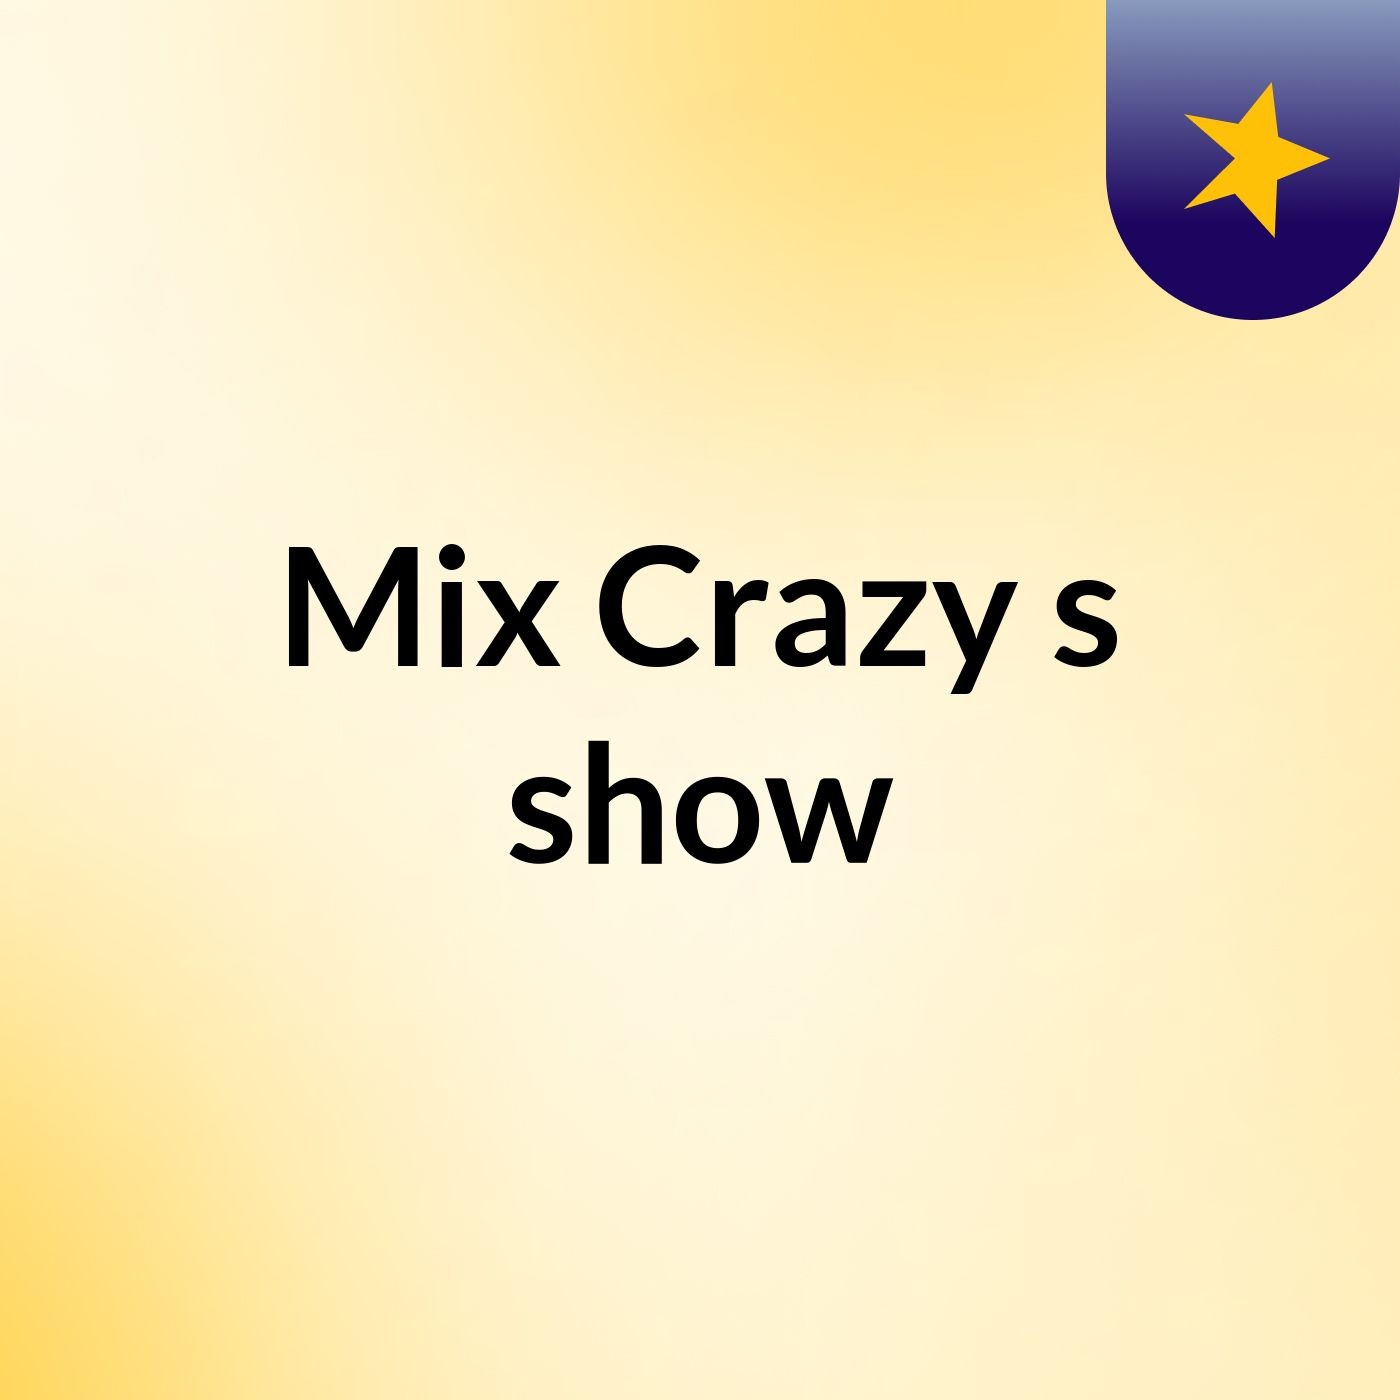 Mix Crazy's show